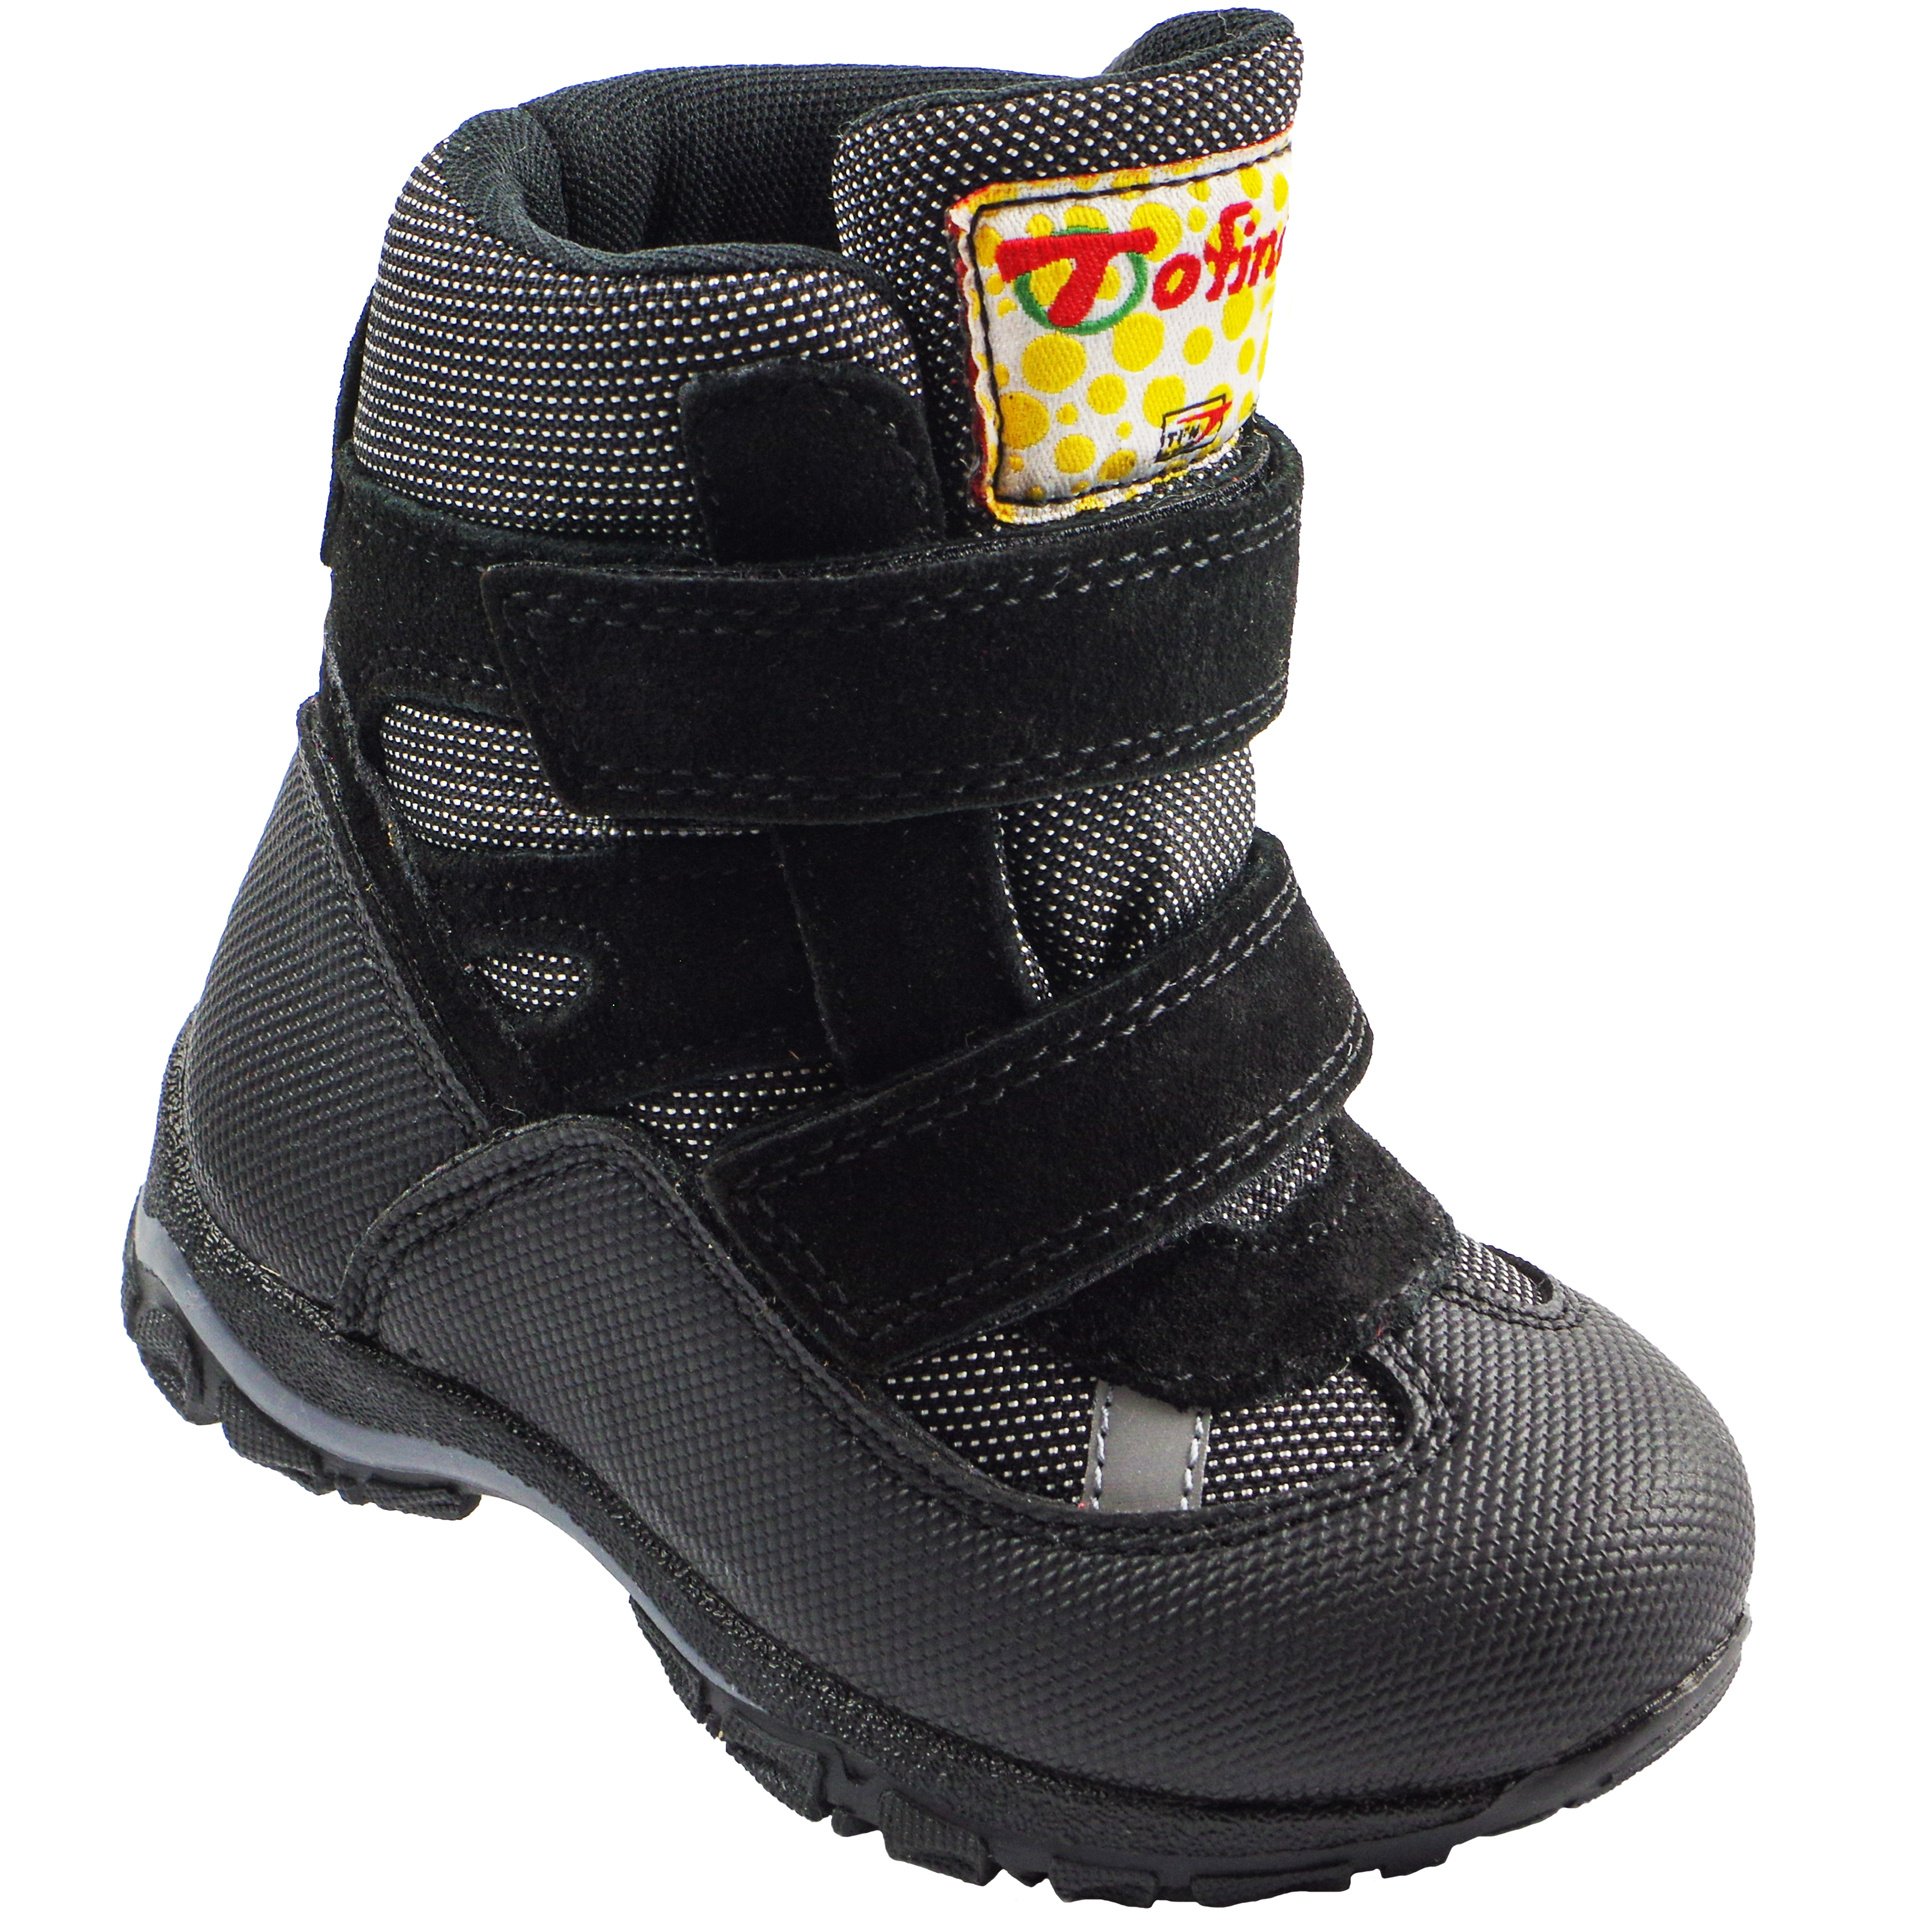 Зимові мембранні черевики (2147) для хлопчика, матеріал Мембрана, Чорний колір, 22-25 розміри – Sole Kids